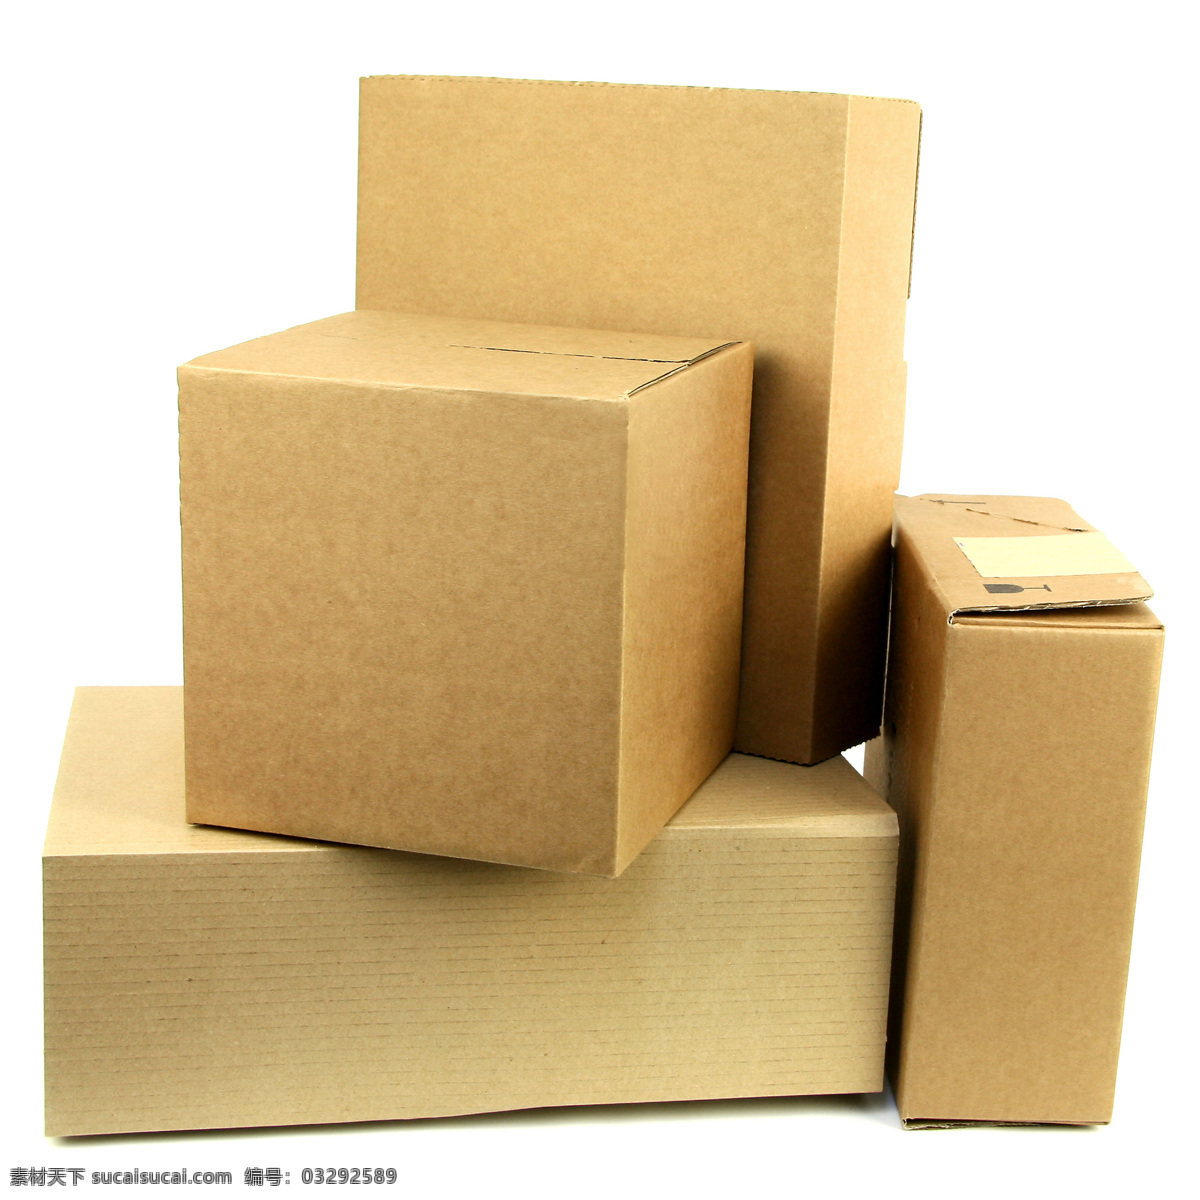 高清纸箱摄影 纸箱 纸箱摄影 箱子 包装盒 产品包装 盒子 生活用品 其他类别 生活百科 白色